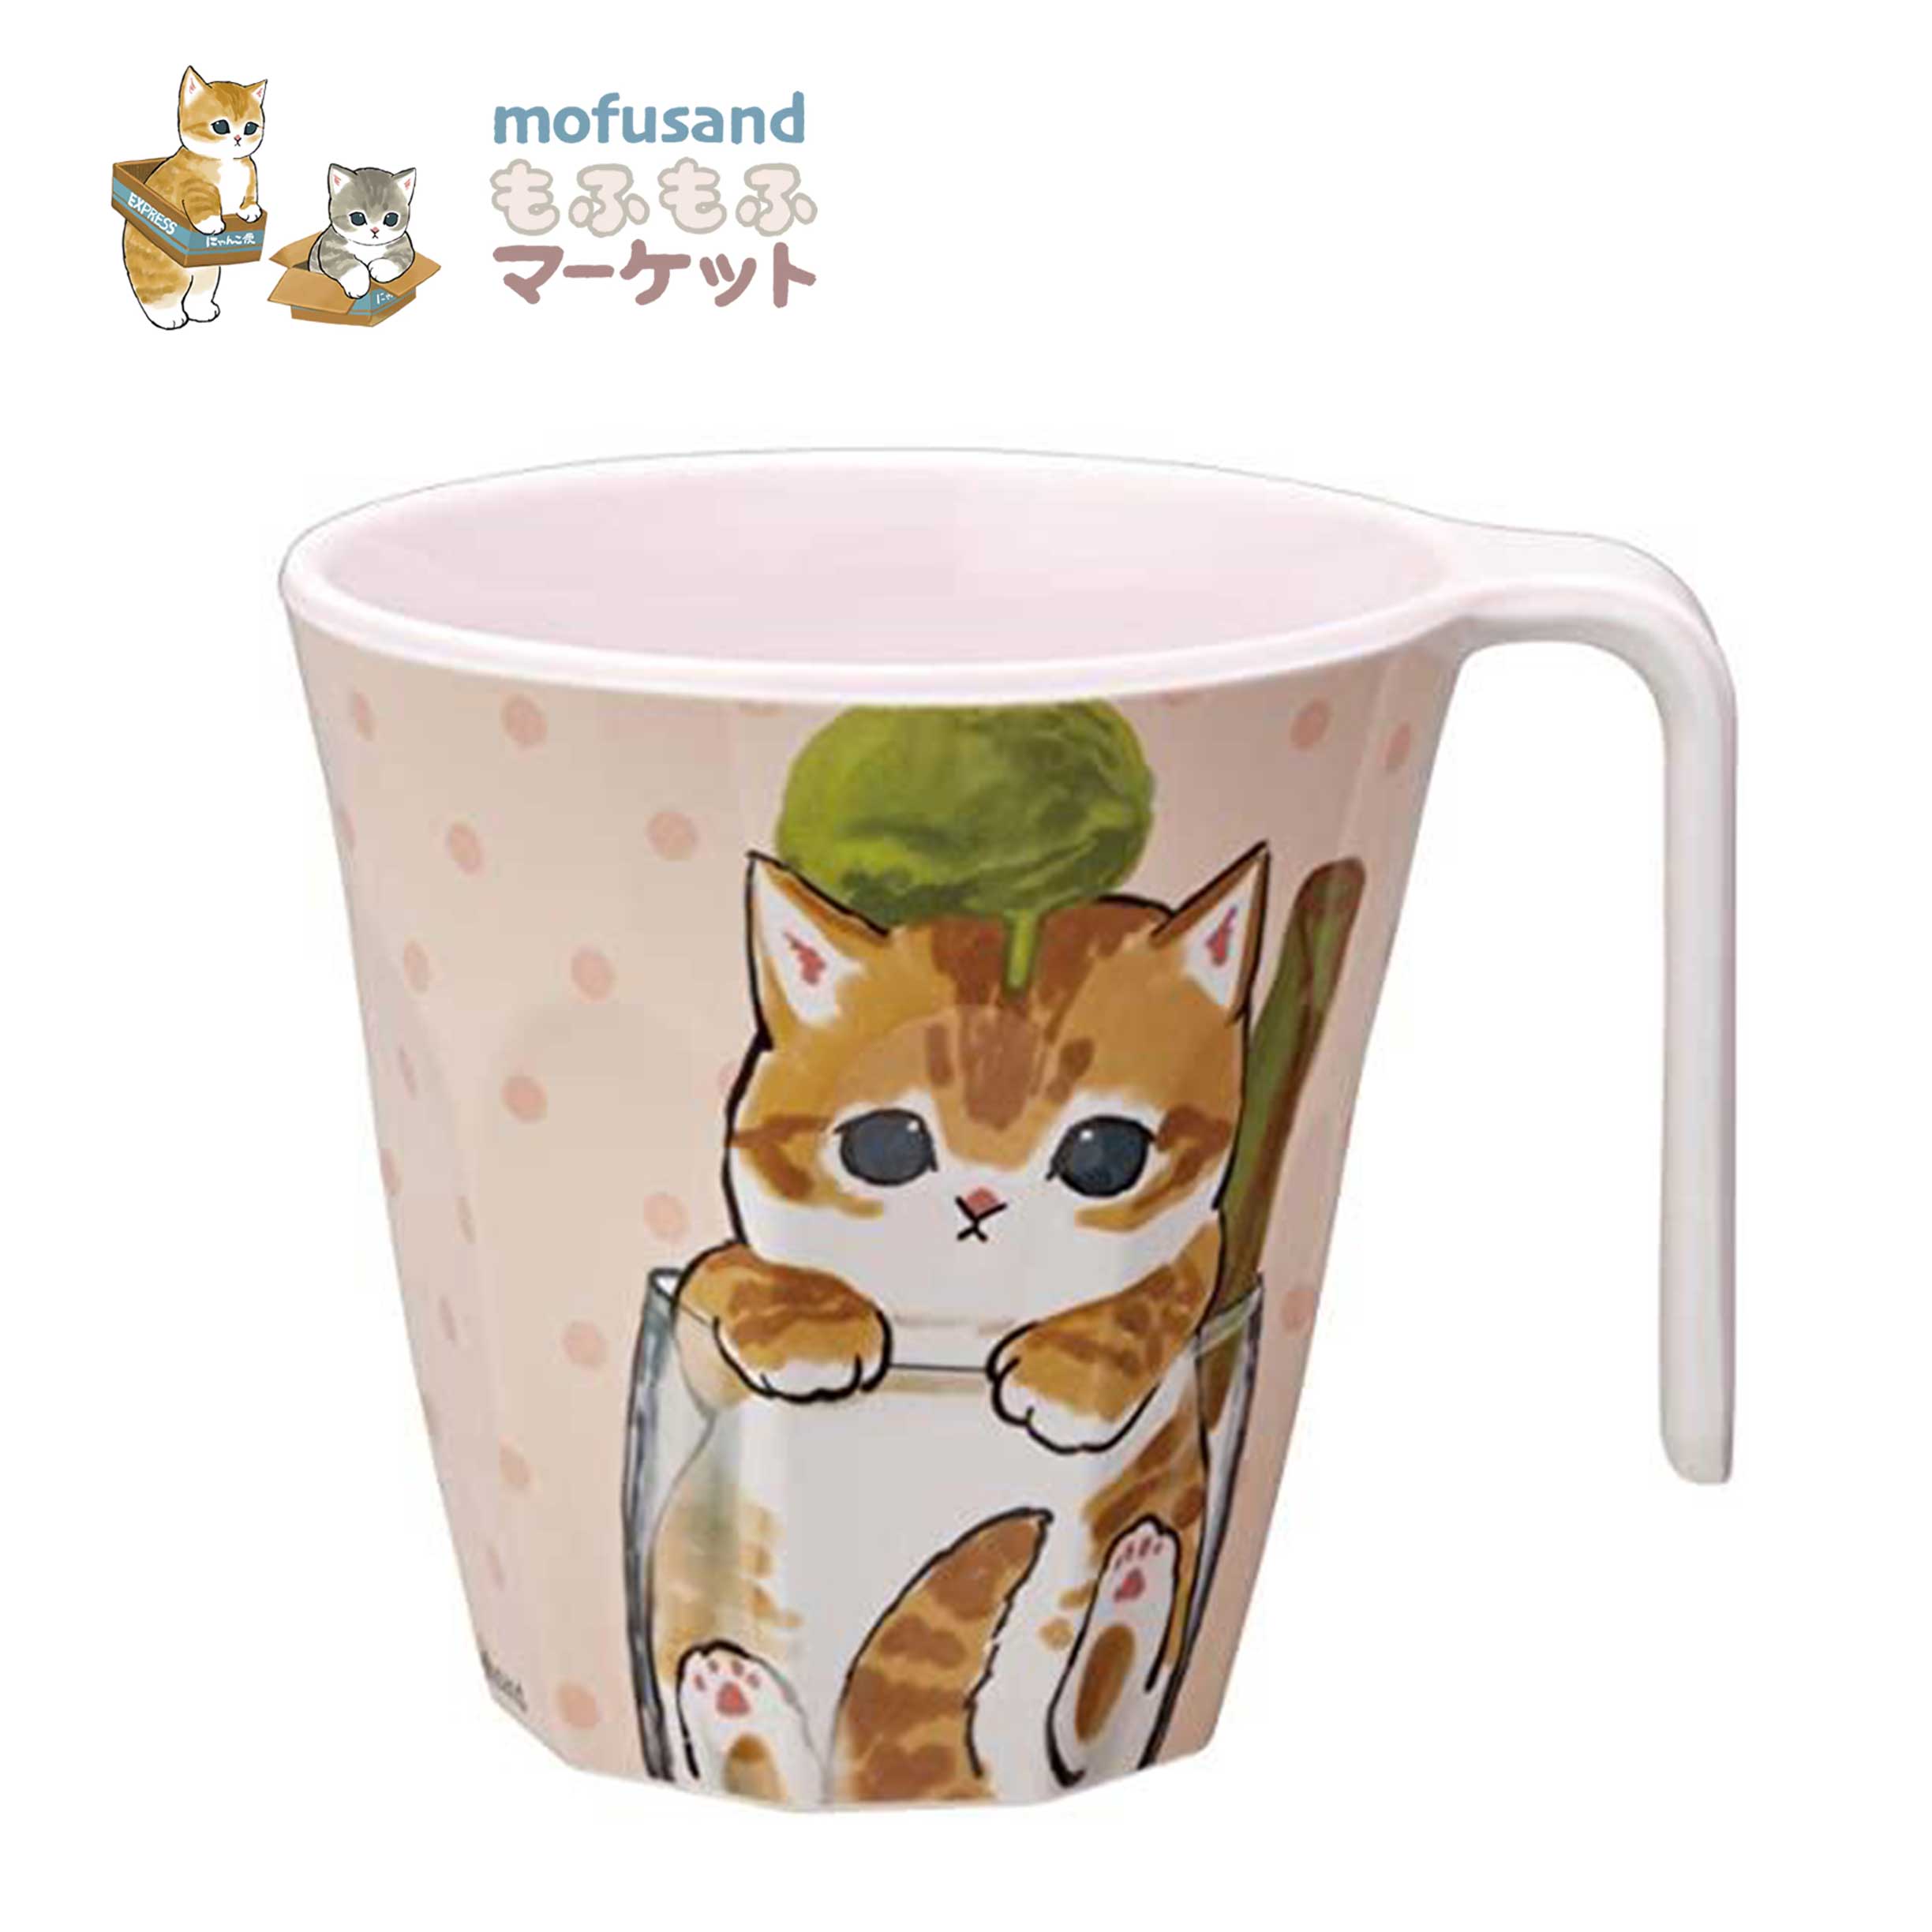 單耳水杯 300ml-貓福珊迪 mofusand 日本進口正版授權